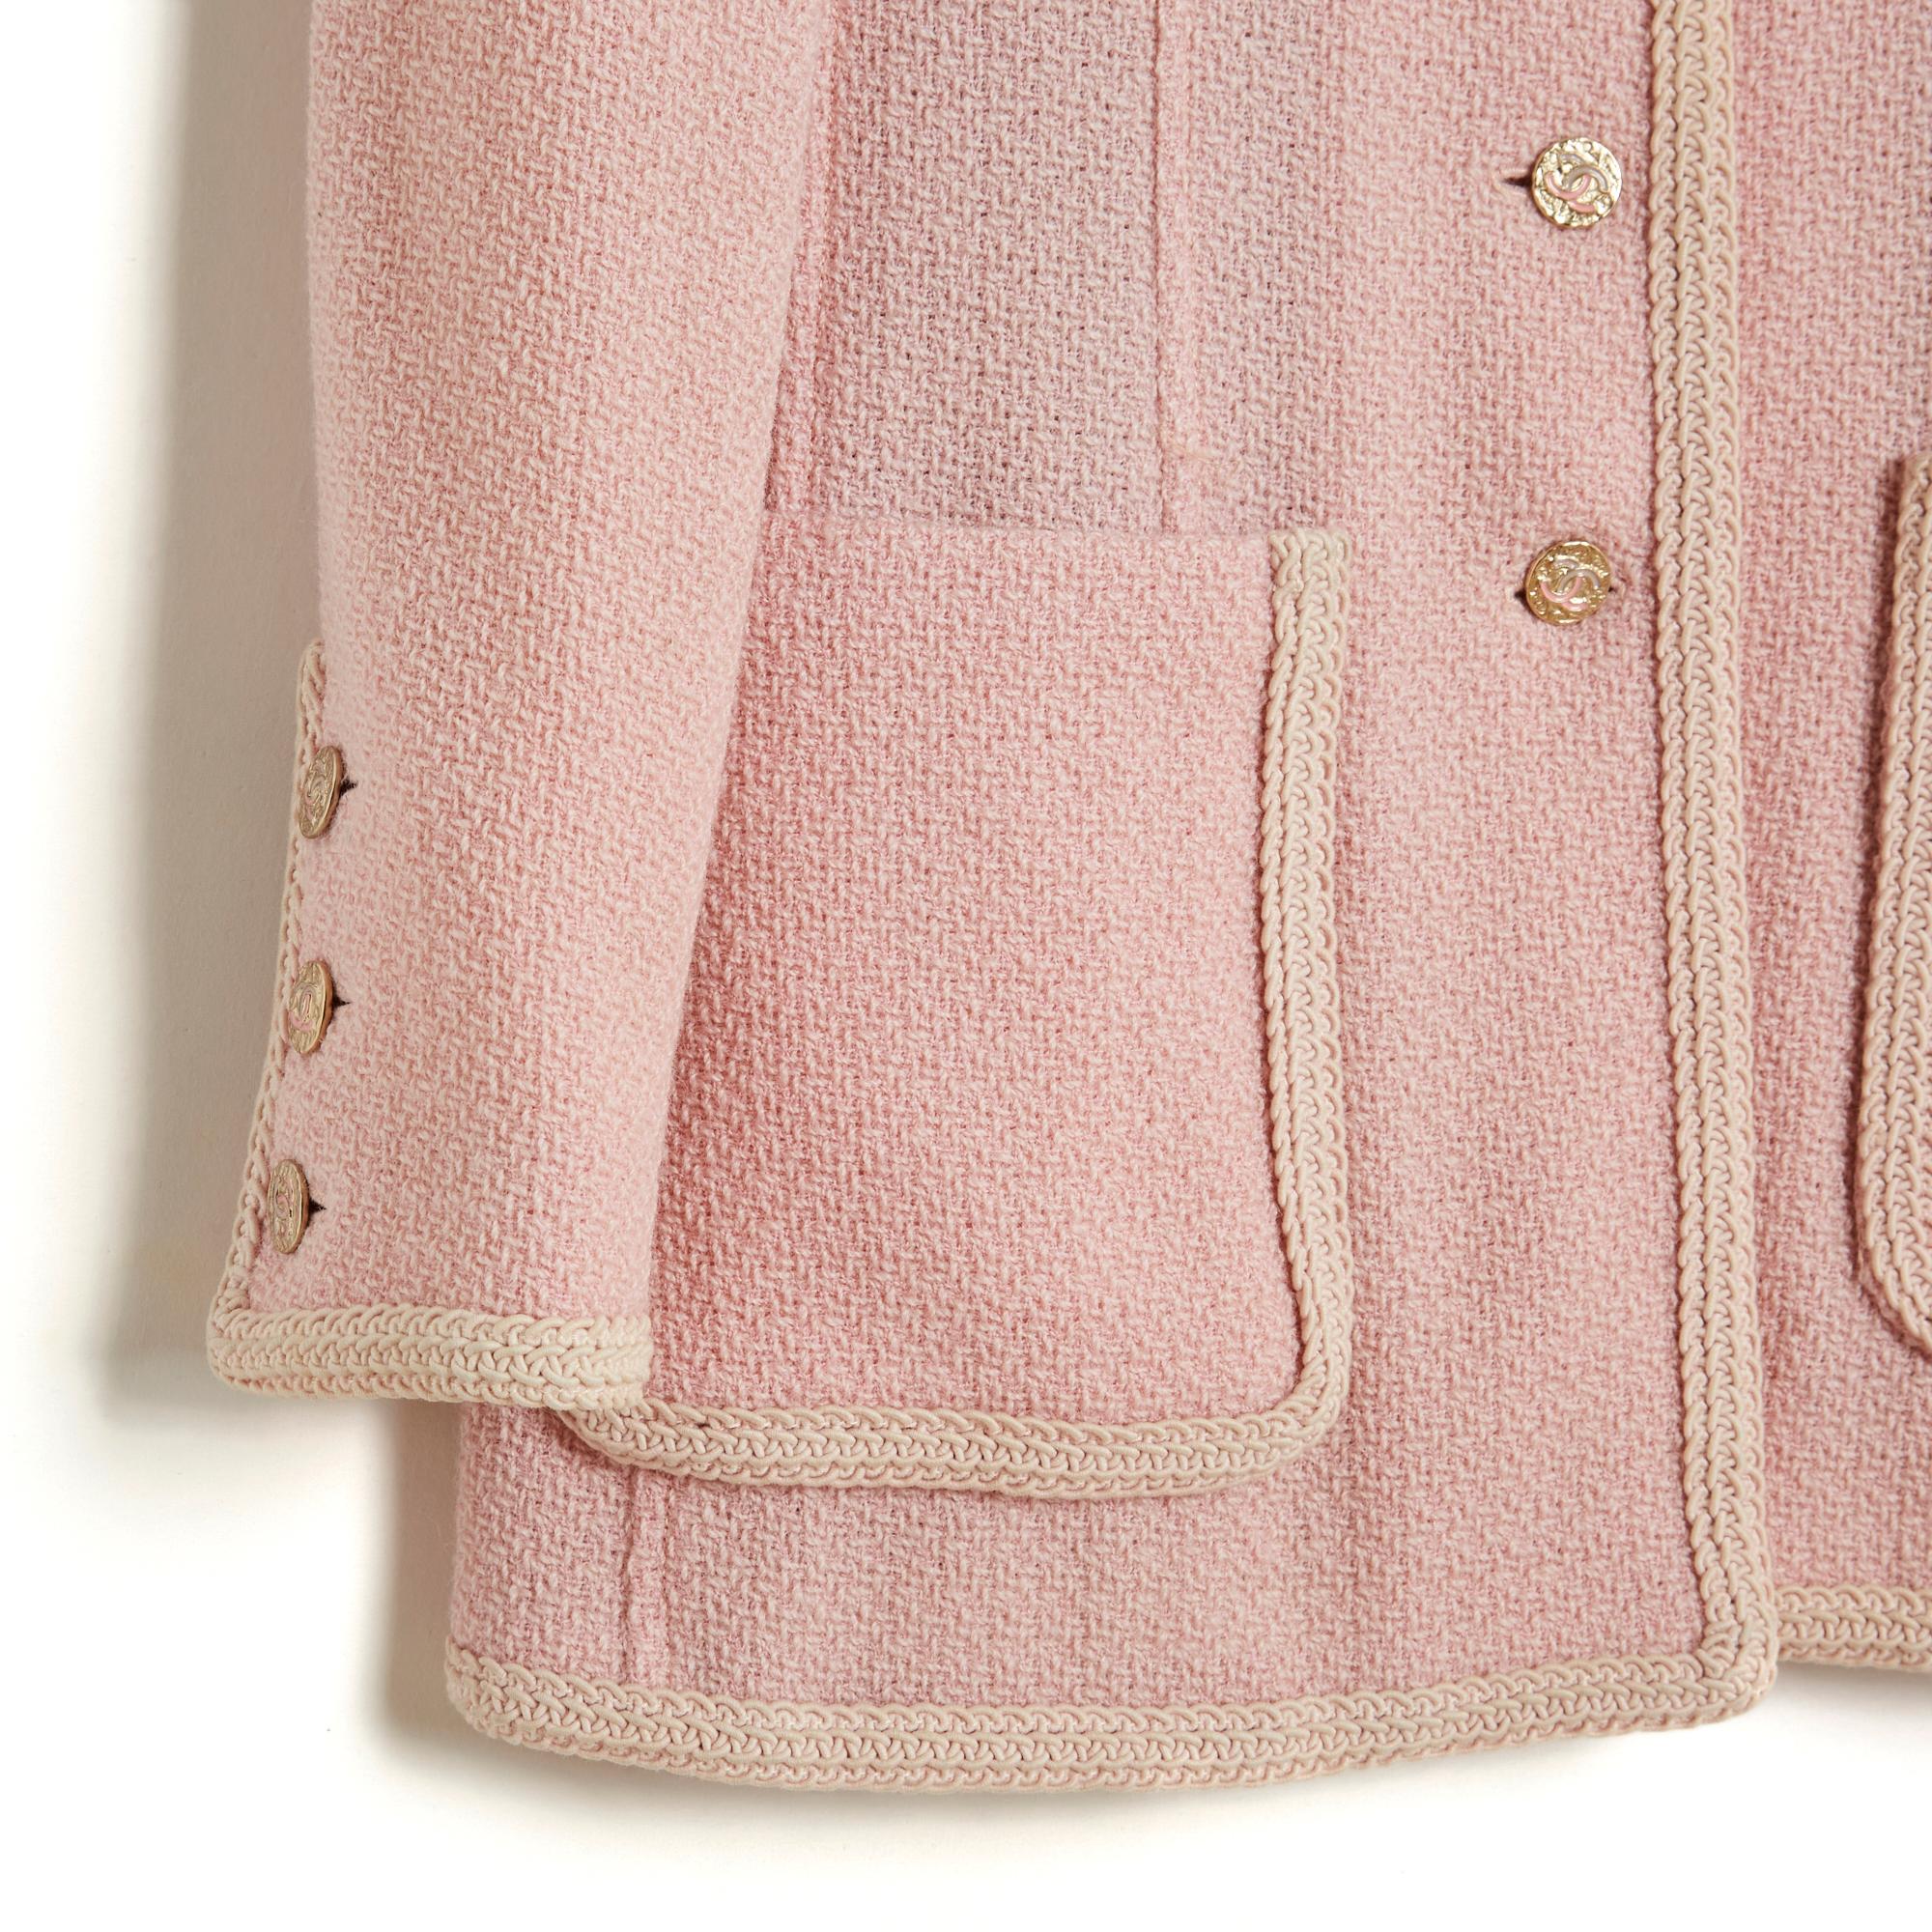 Veste Chanel circa 1994 en laine mate rose pâle garnie de passementerie beige écru, col rond fermé par 6 boutons de la marque Chanel en métal légèrement doré, 4 poches plaquées sur la poitrine et sur les hanches, manches longues fermées chacune par